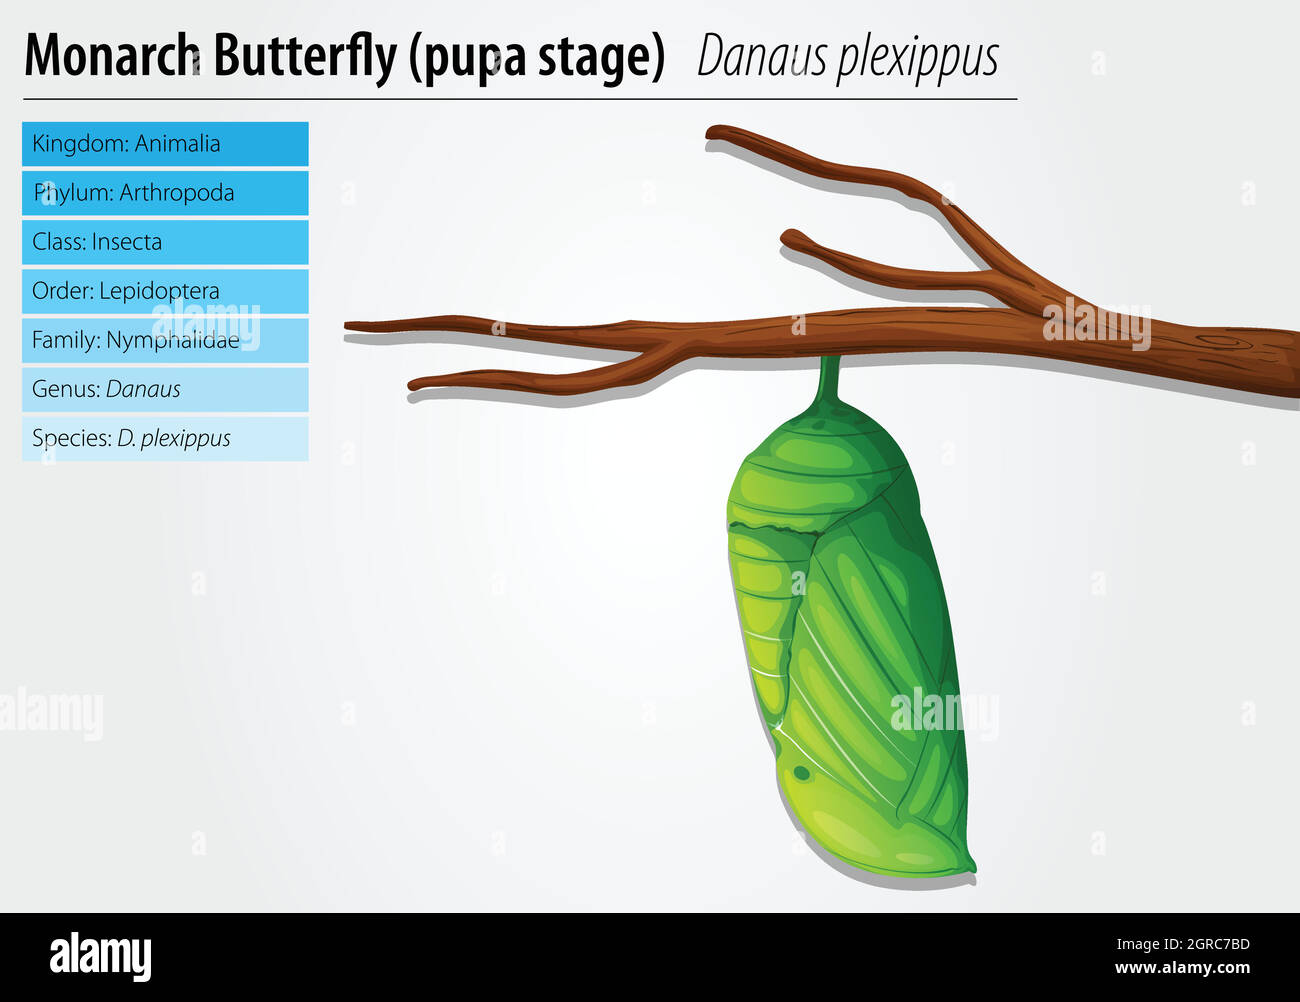 Farfalla Monarch - Danaus plexippus - palcoscenico pupa Illustrazione Vettoriale